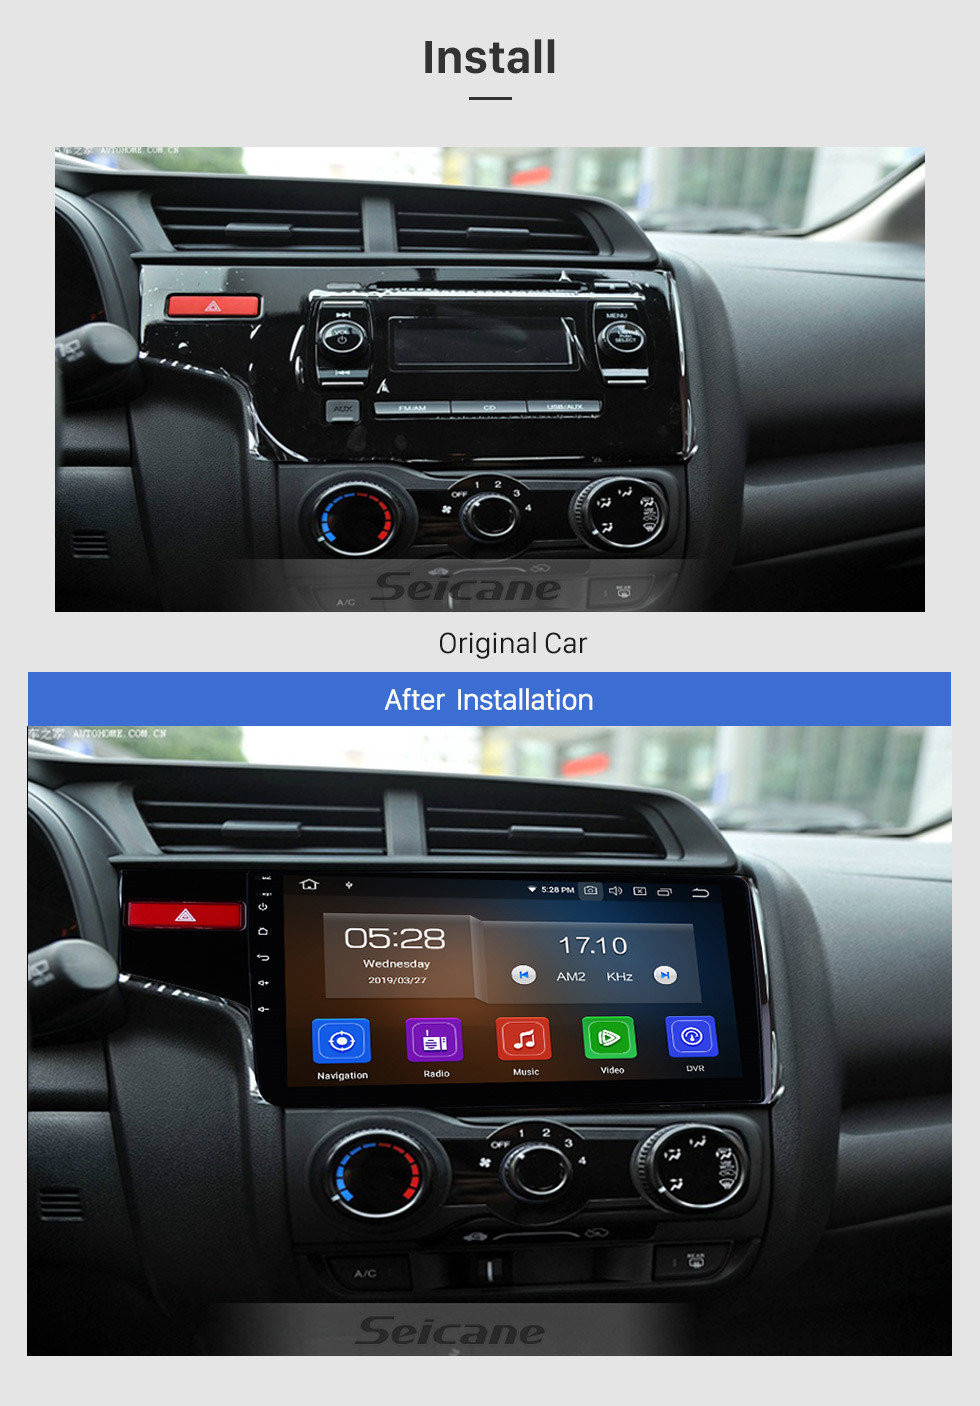 Seicane Écran tactile capacitif de radio 10,1 pouces OEM Android 10,0 pour 2014 2015 Honda FIT Support WiFi Bluetooth Système de navigation GPS TPMS DVR OBD II AUX Appui-tête Moniteur Contrôle Vidéo Caméra arrière USB SD